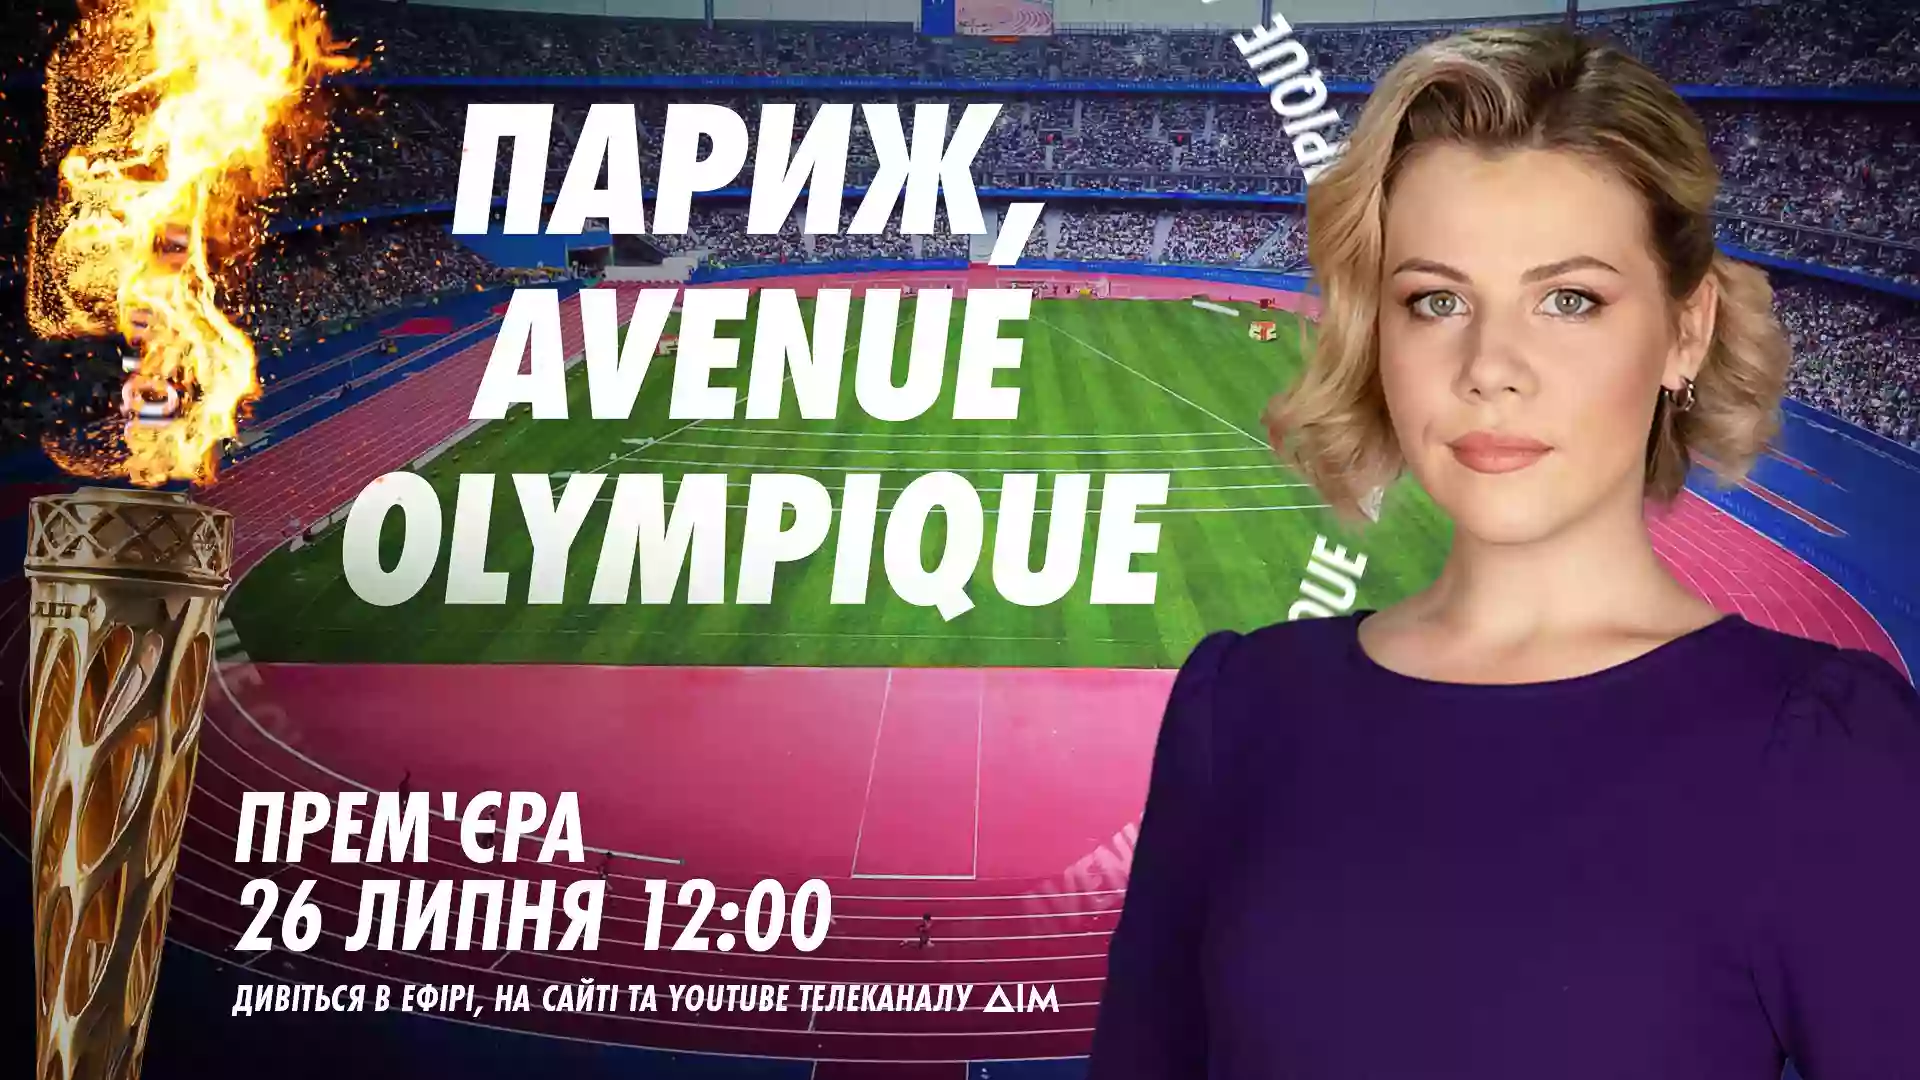 Спецвипуски Avenue Olympique під час цьогорічної Олімпіади в Парижі виходитимуть на каналі «Дім»